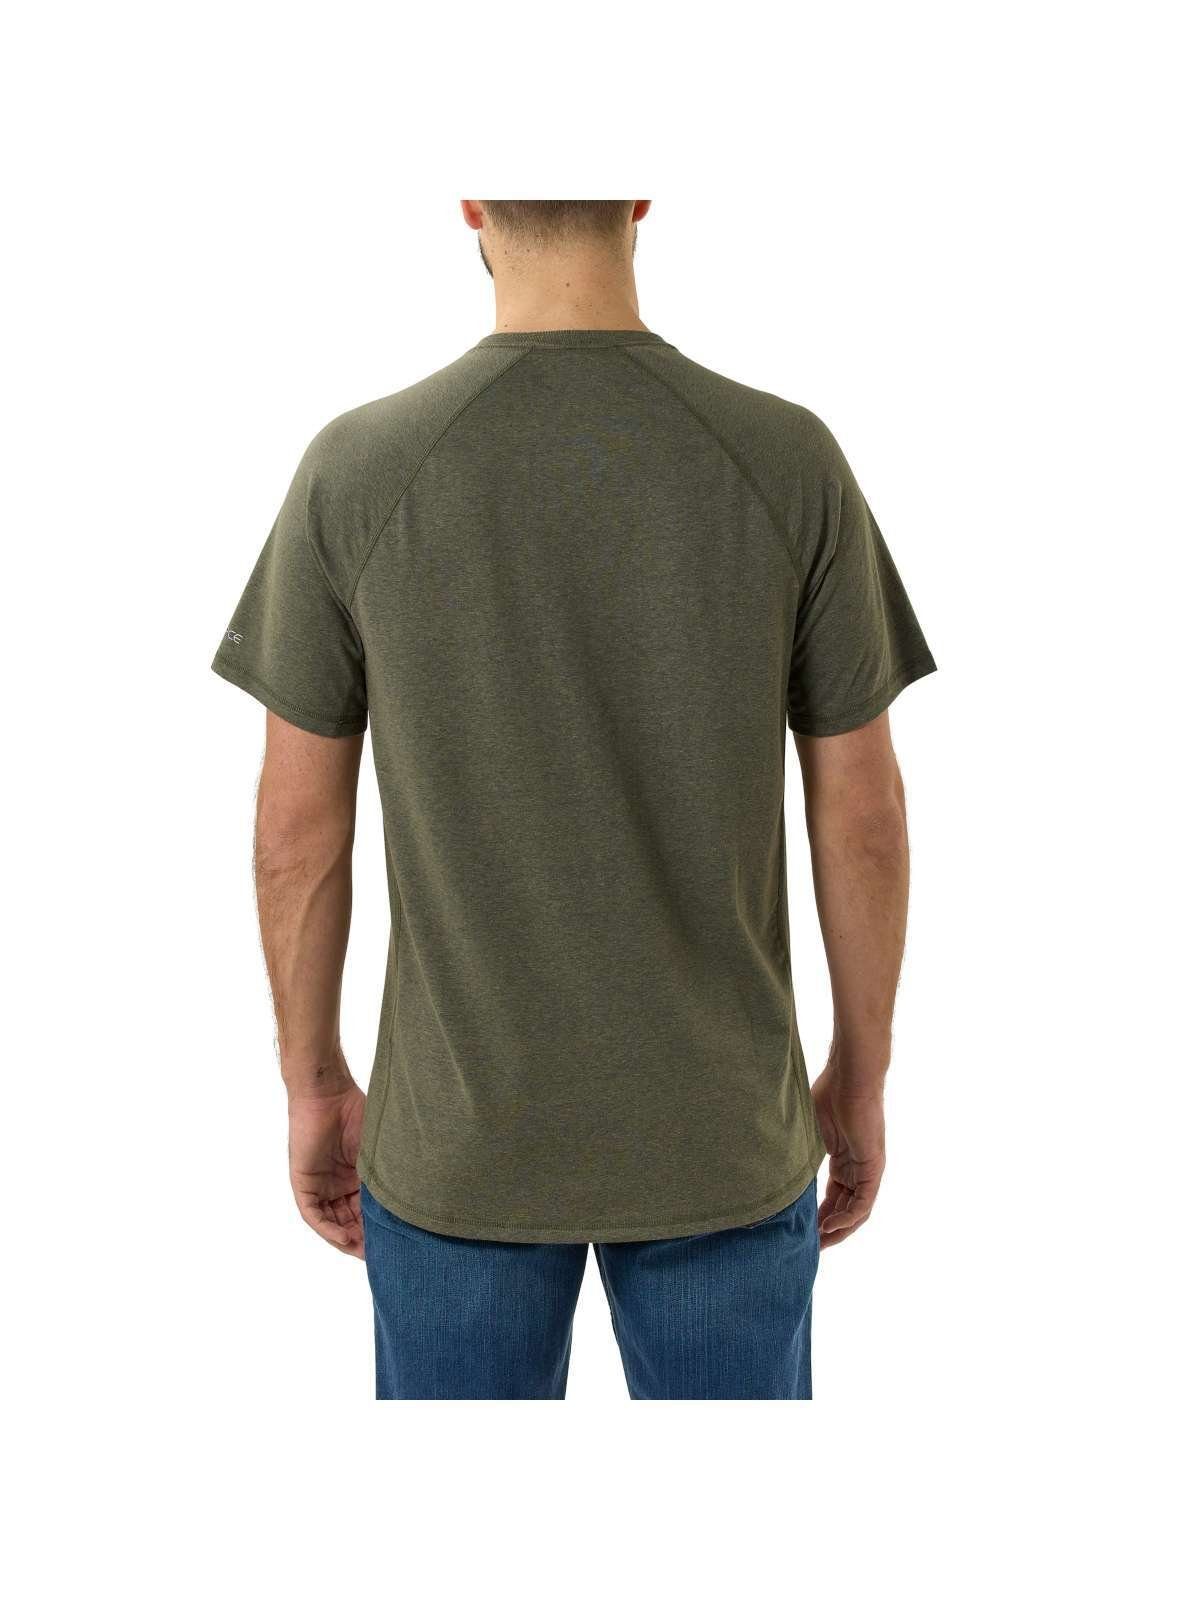 T-Shirt basil Logo T-Shirt heather Carhartt Carhartt